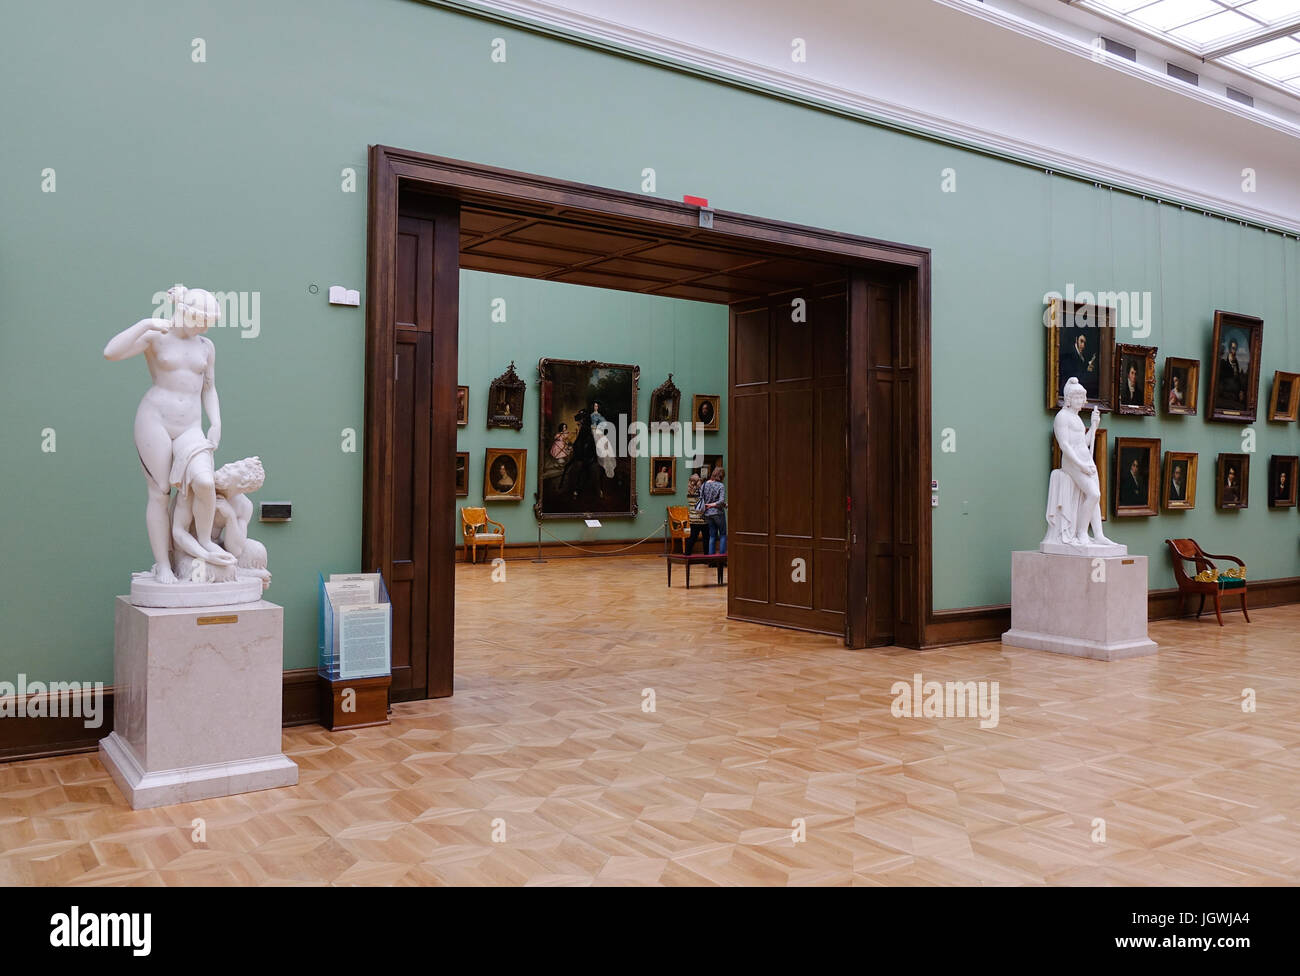 Mosca, Russia - Ott 20, 2016. Preziose sculture nello Stato Galleria Tretyakov di Mosca, Russia. La galleria è il luogo depositario della pinna russo Foto Stock